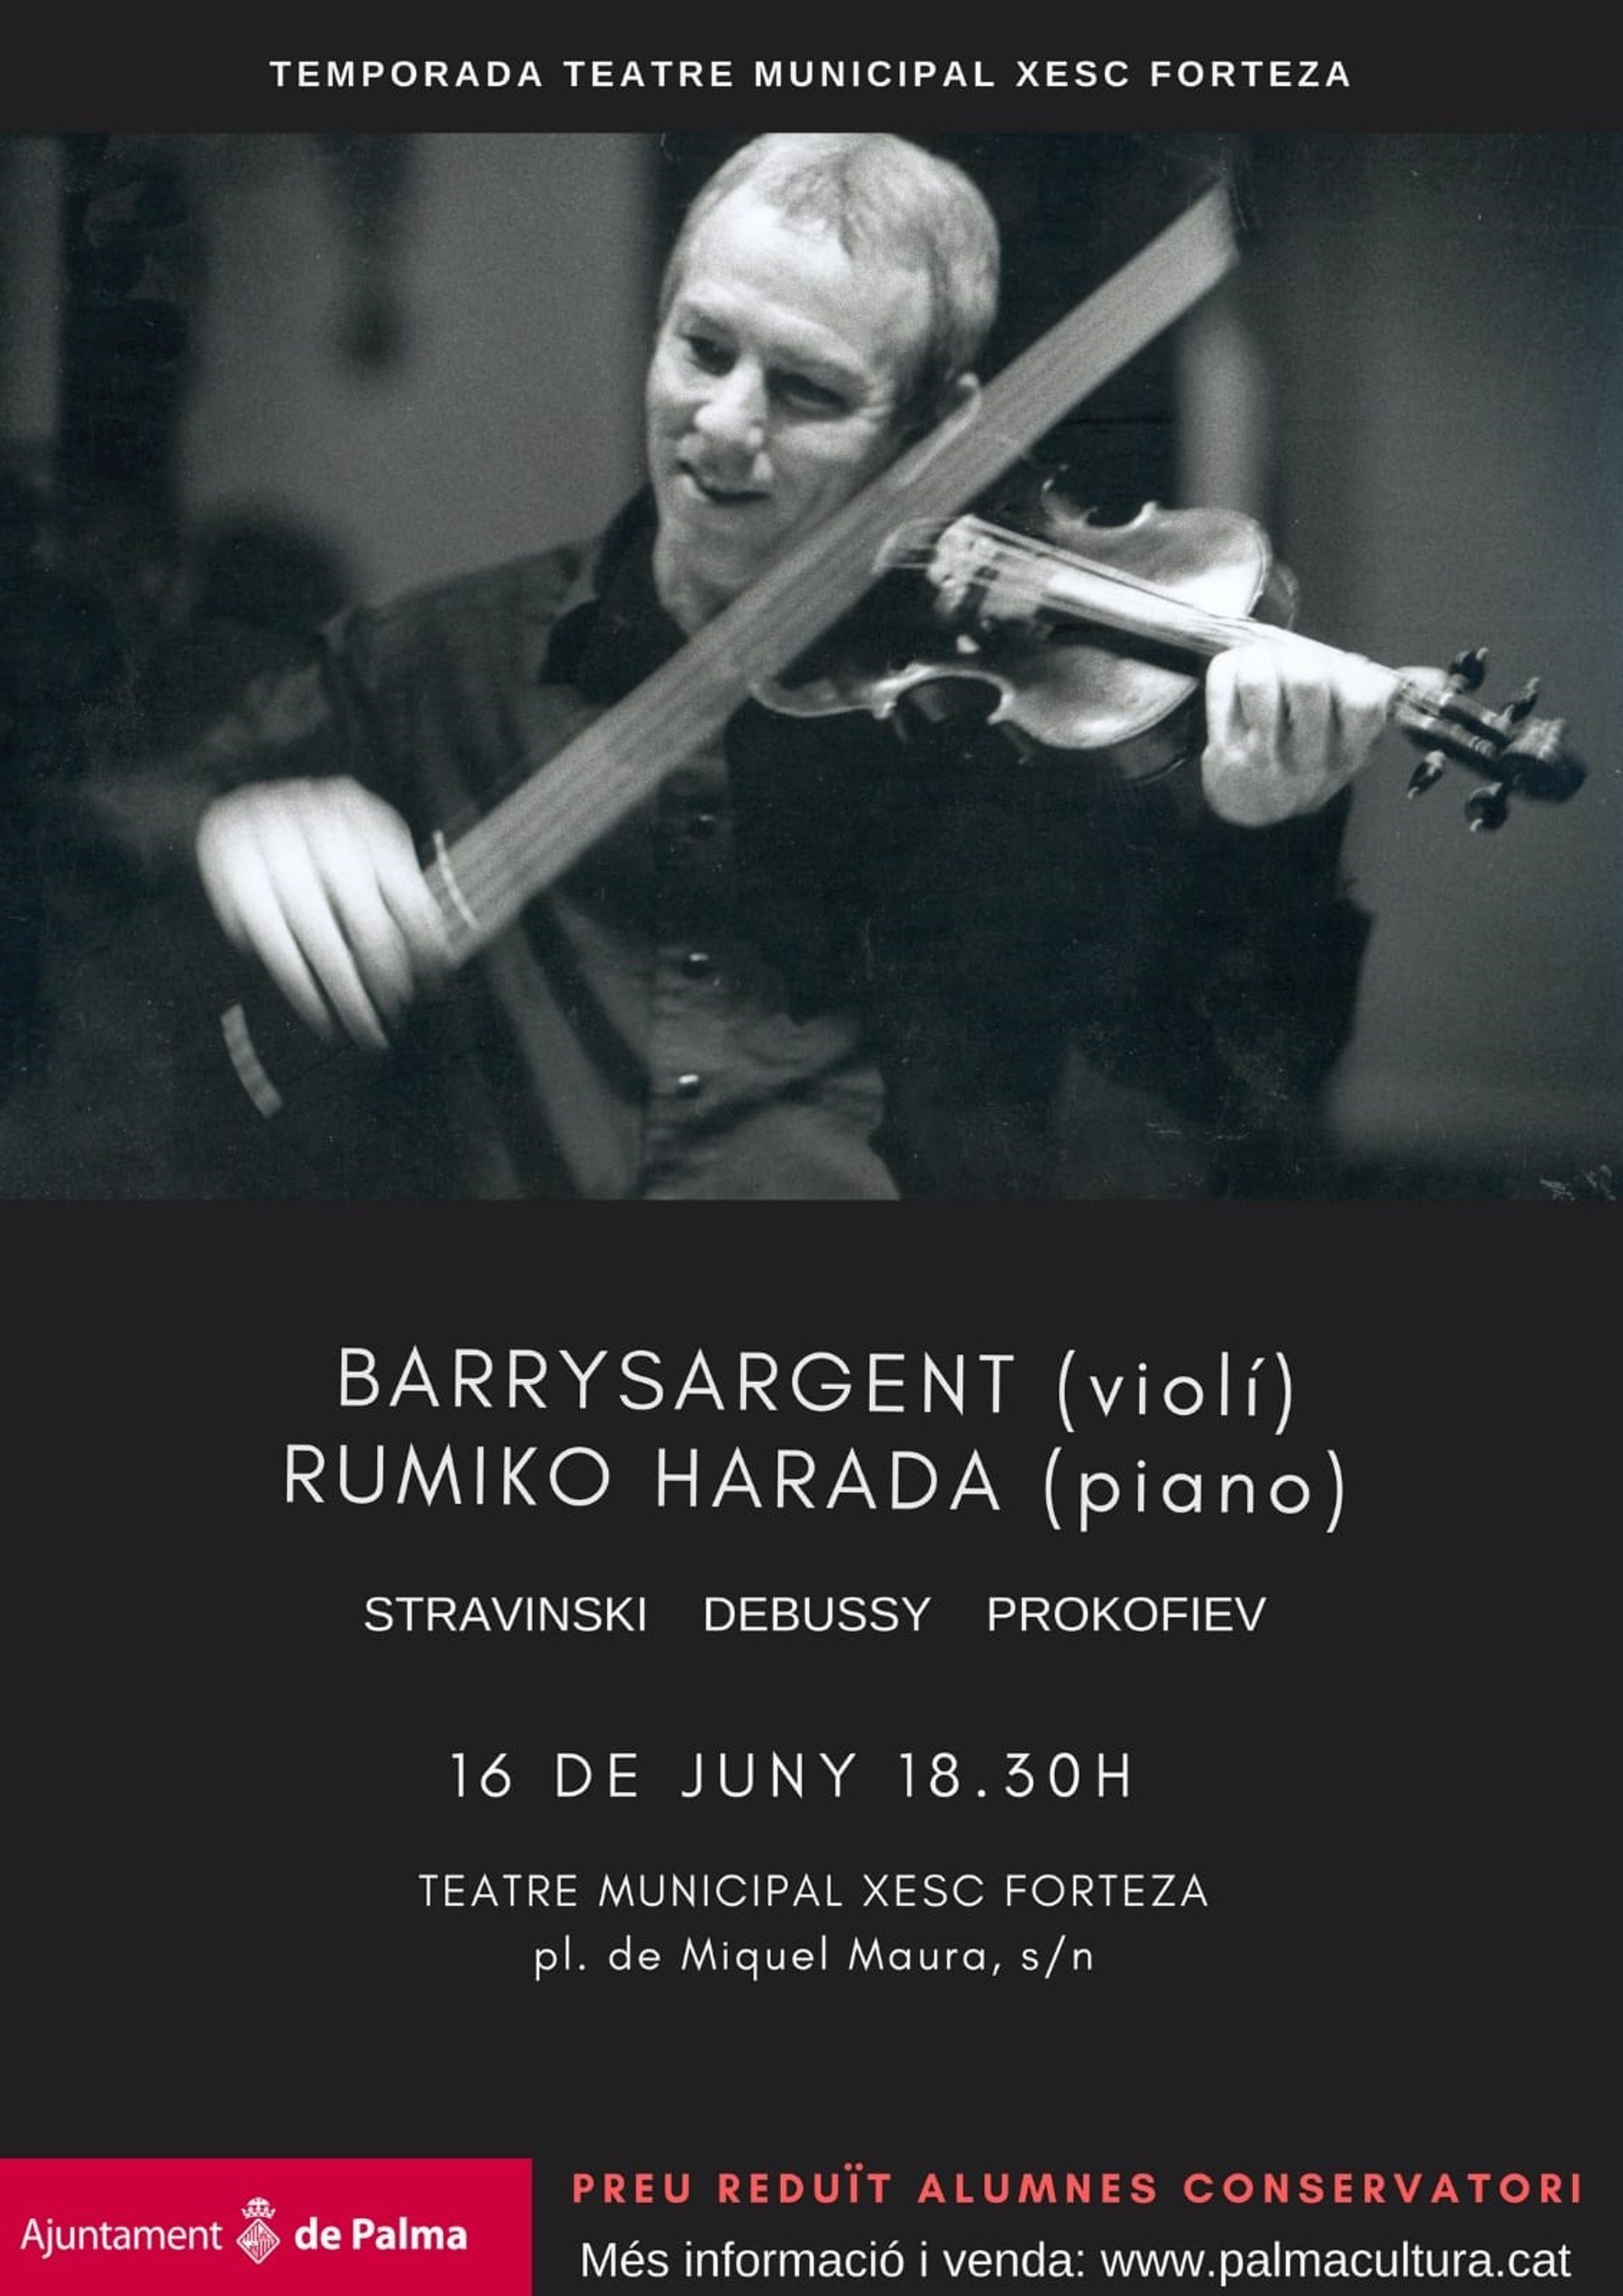 El Xesc Forteza acogerá este sábado un concierto del violinista Barry Sargent y de la pianista Rumiko Harada